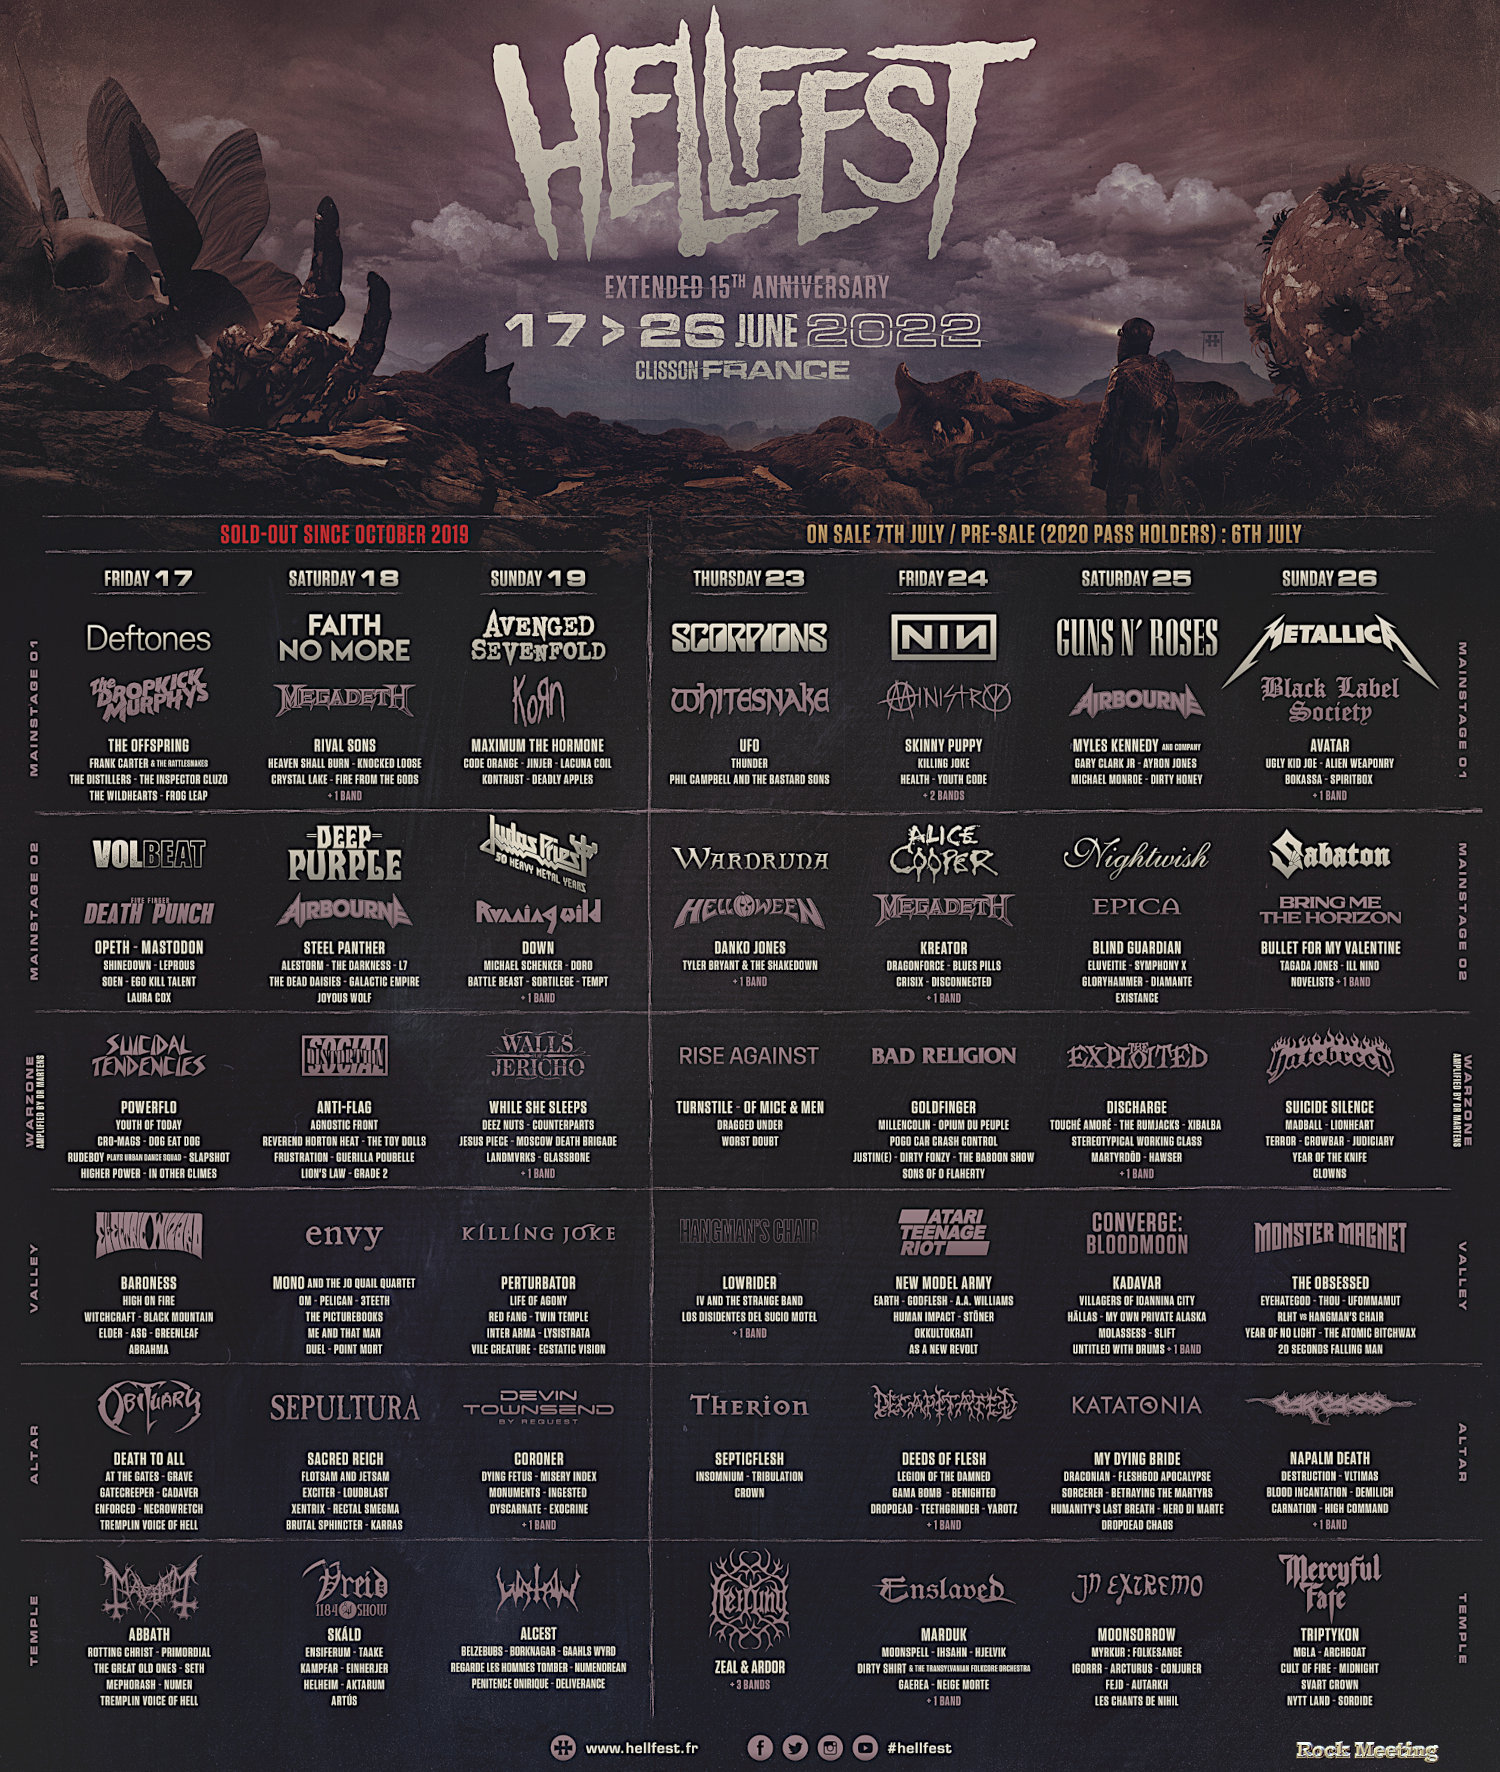 hellfest 2022 l edition aura lieu du 17 au 19 juin puis 24 au 26 juin avec metallica les guns n roses et les scorpions 01